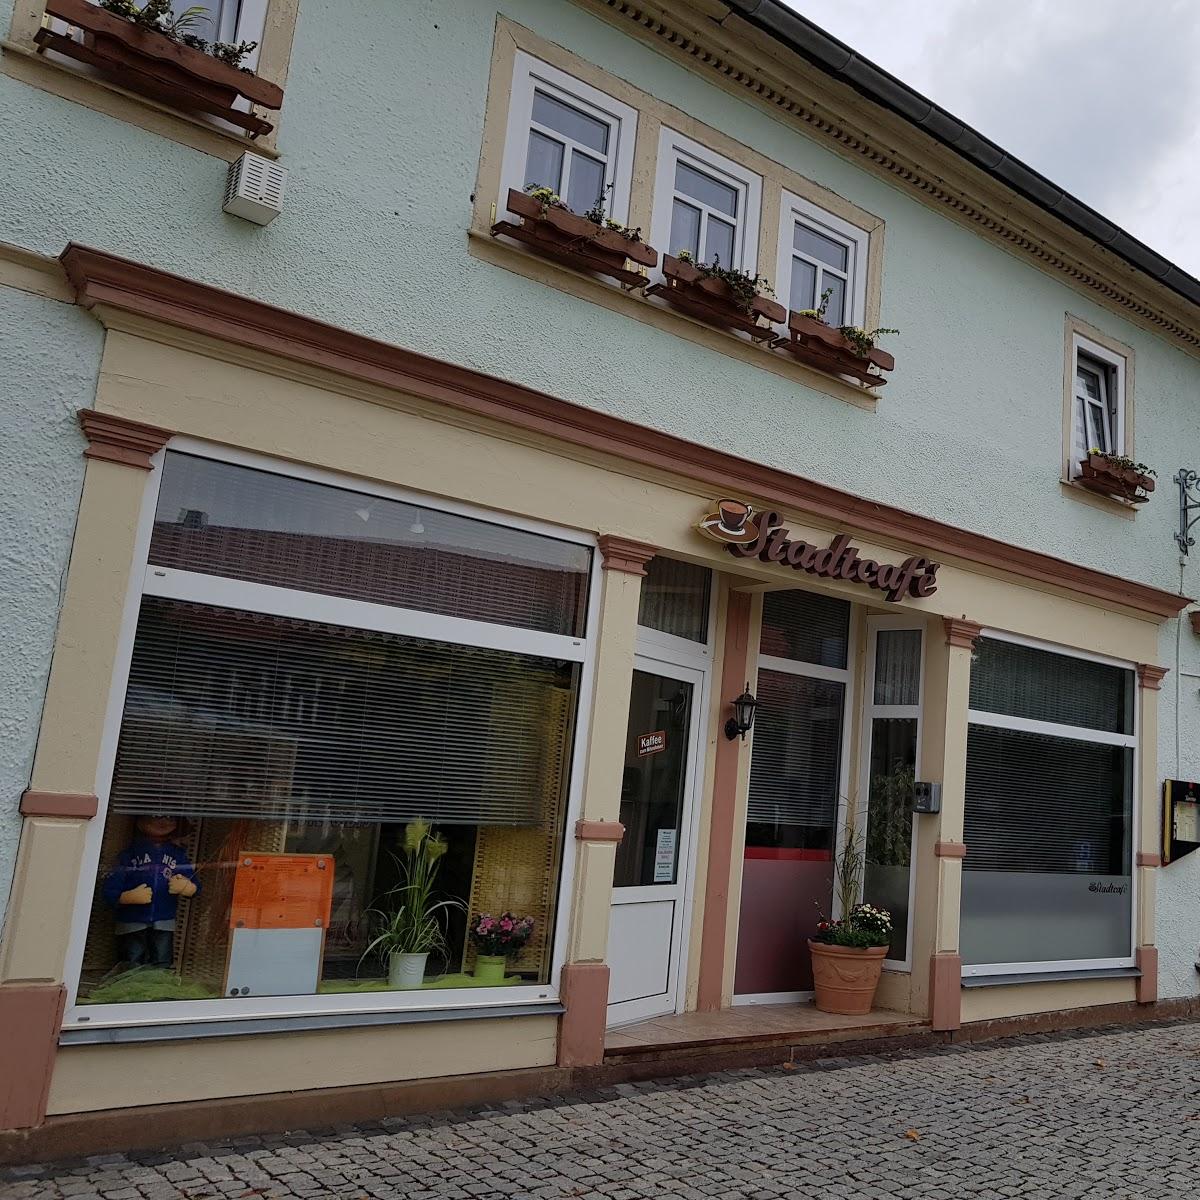 Restaurant "Stadtcafé" in Friedrichroda